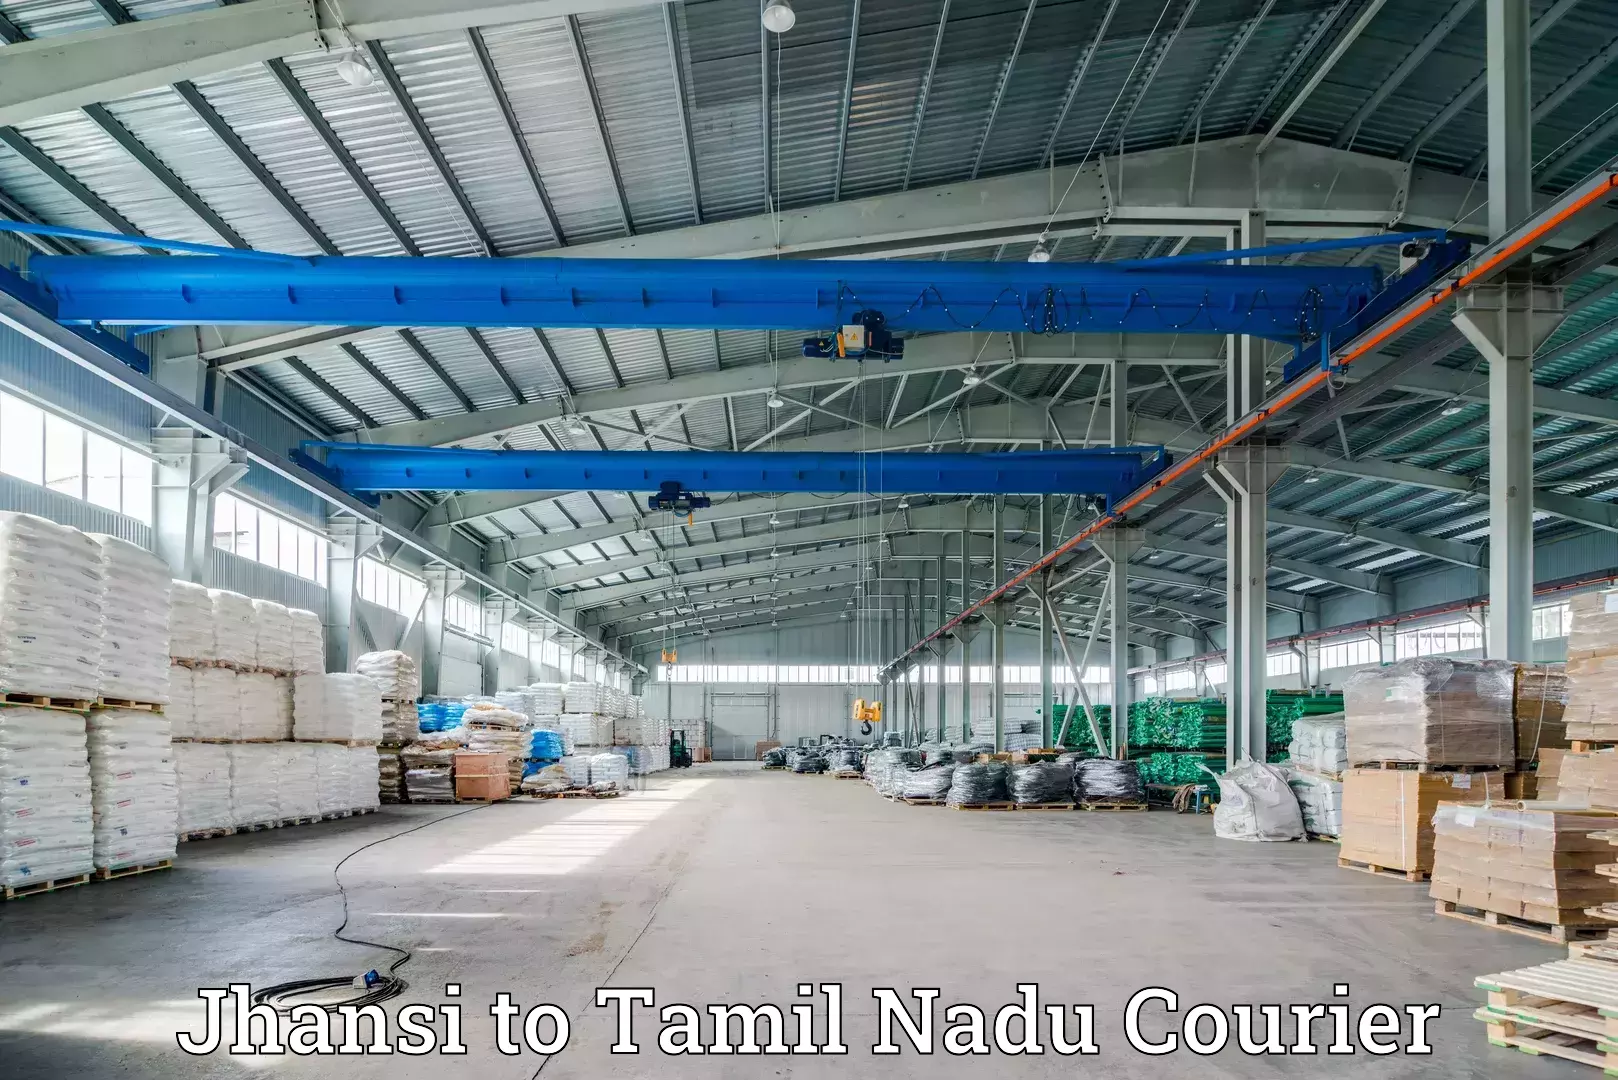 Express logistics providers Jhansi to Tamil Nadu